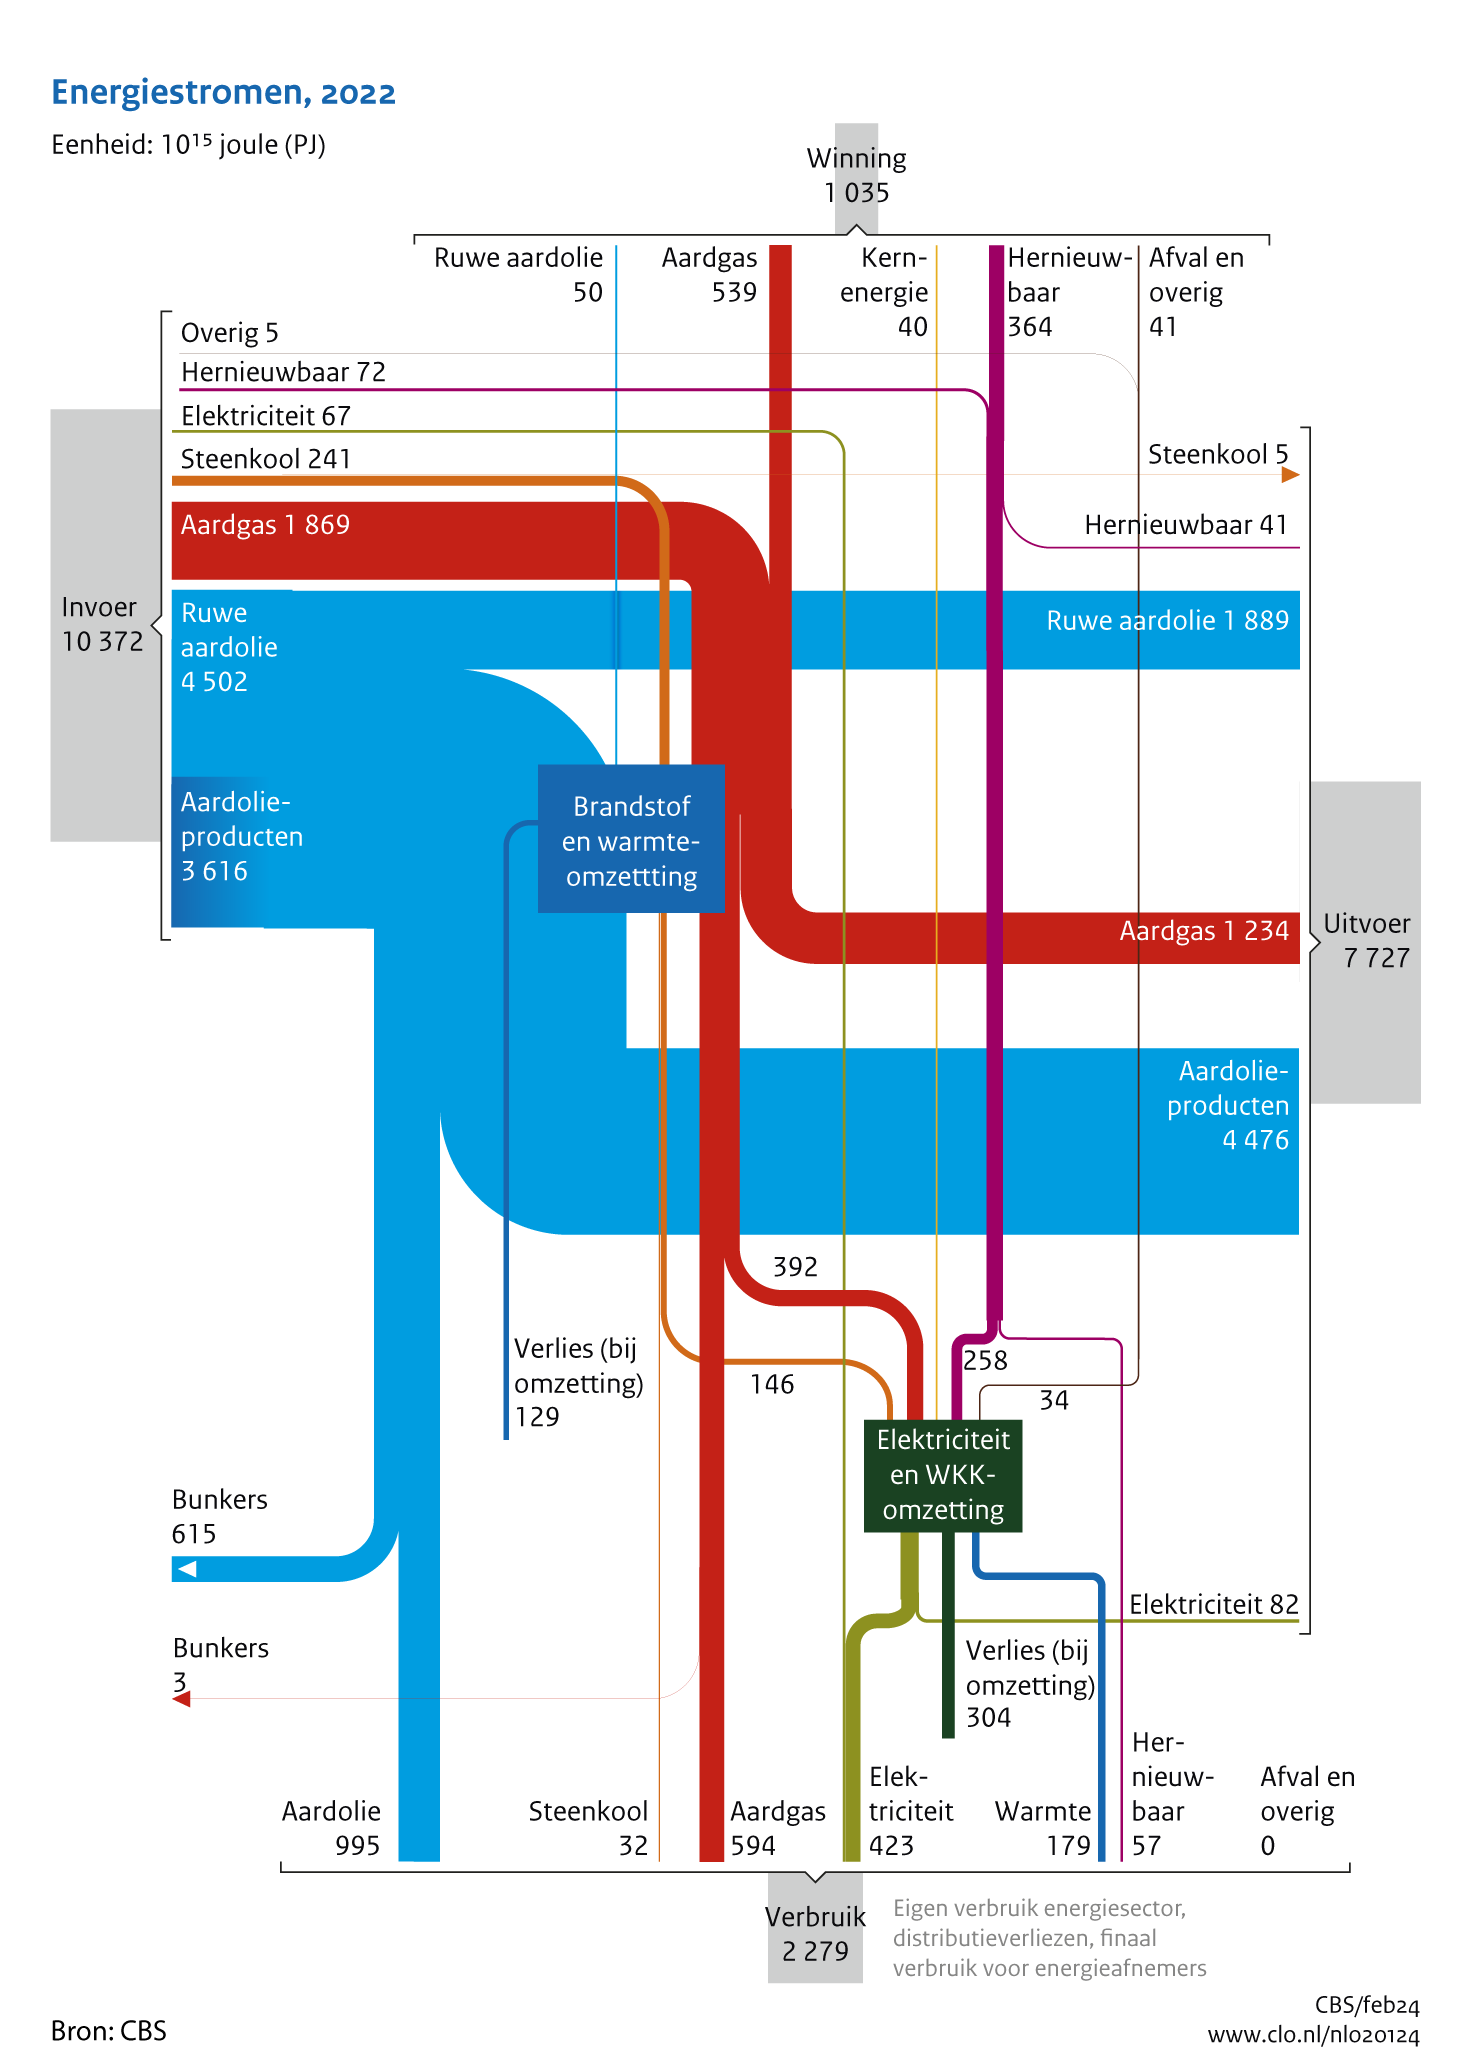 Het stroomschema energie geeft een grafische voorstelling van de winning, invoer, uitvoer, bunkers en verbruik van de energiedragers ruwe aardolie, aardolieproducten, aardgas, steenkool, hernieuwbare energie, kernenergie, warmte en afval en overige energiedragers in Nederland in 2022 (nader voorlopige cijfers). Het grootste deel van de energiedragers ruwe aardolie en aardolieproducten wordt ingevoerd. Hiervan wordt meer dan driekwart uitgevoerd. Het meeste aardgas dat wordt verbruikt komt uit de Nederlandse bodem.